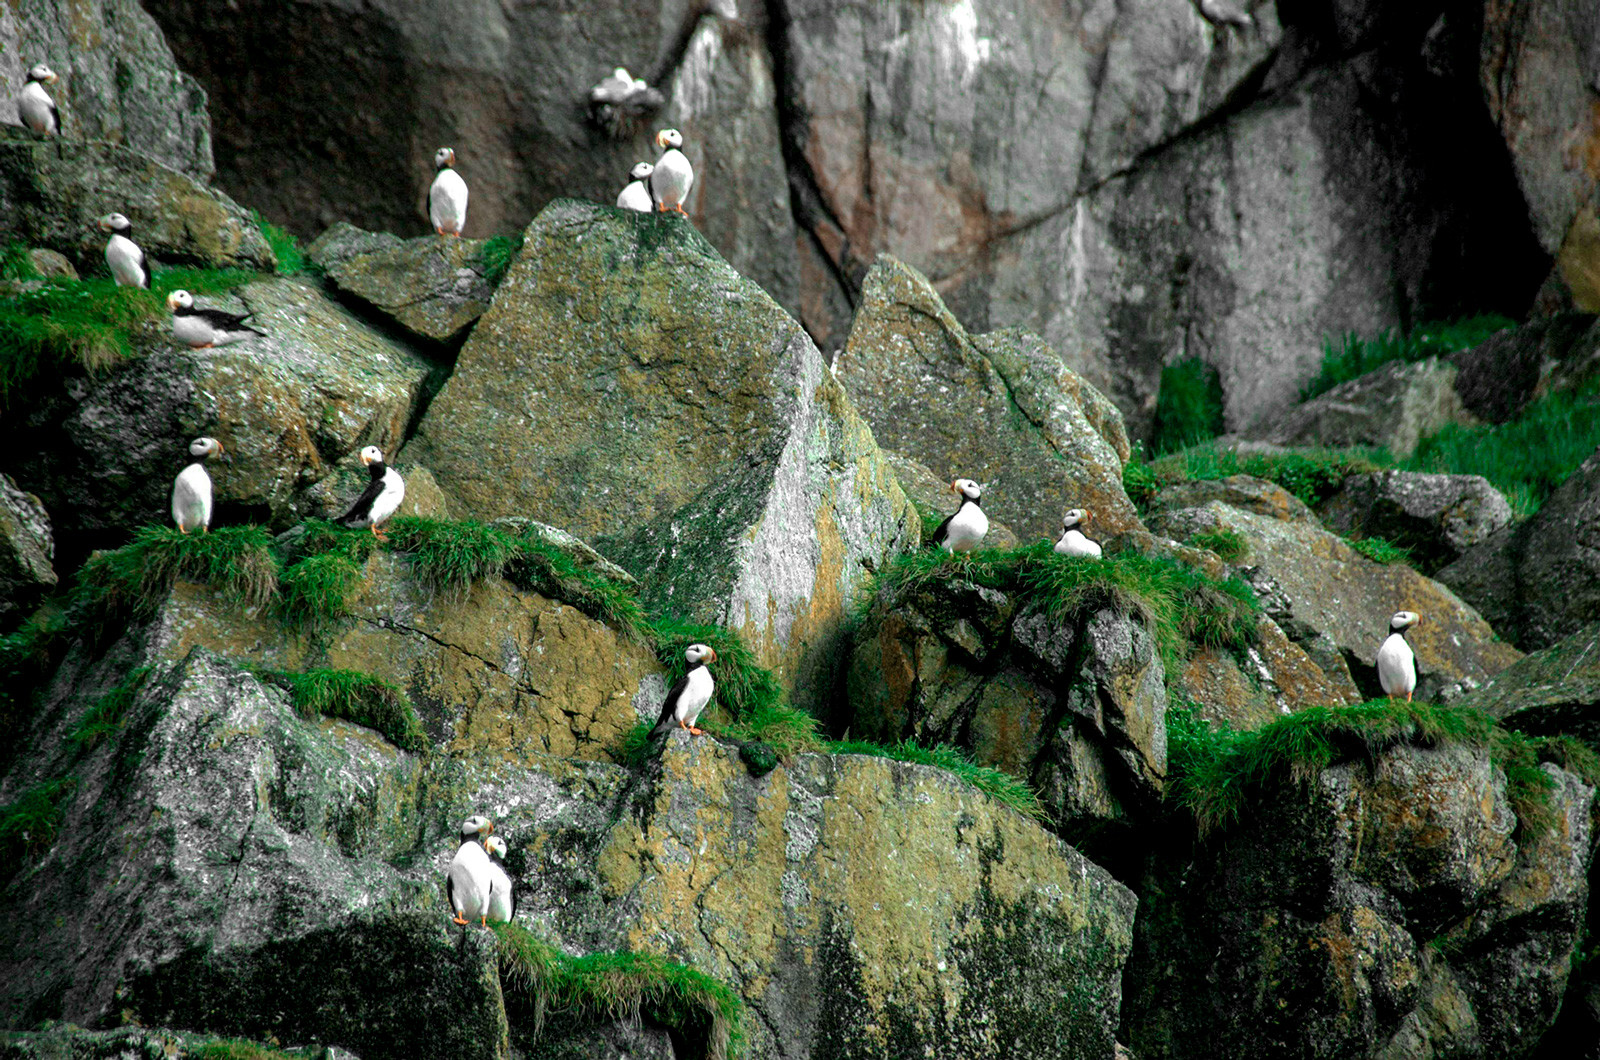 Burung-burung puffin di Pulau Diomede Kecil.